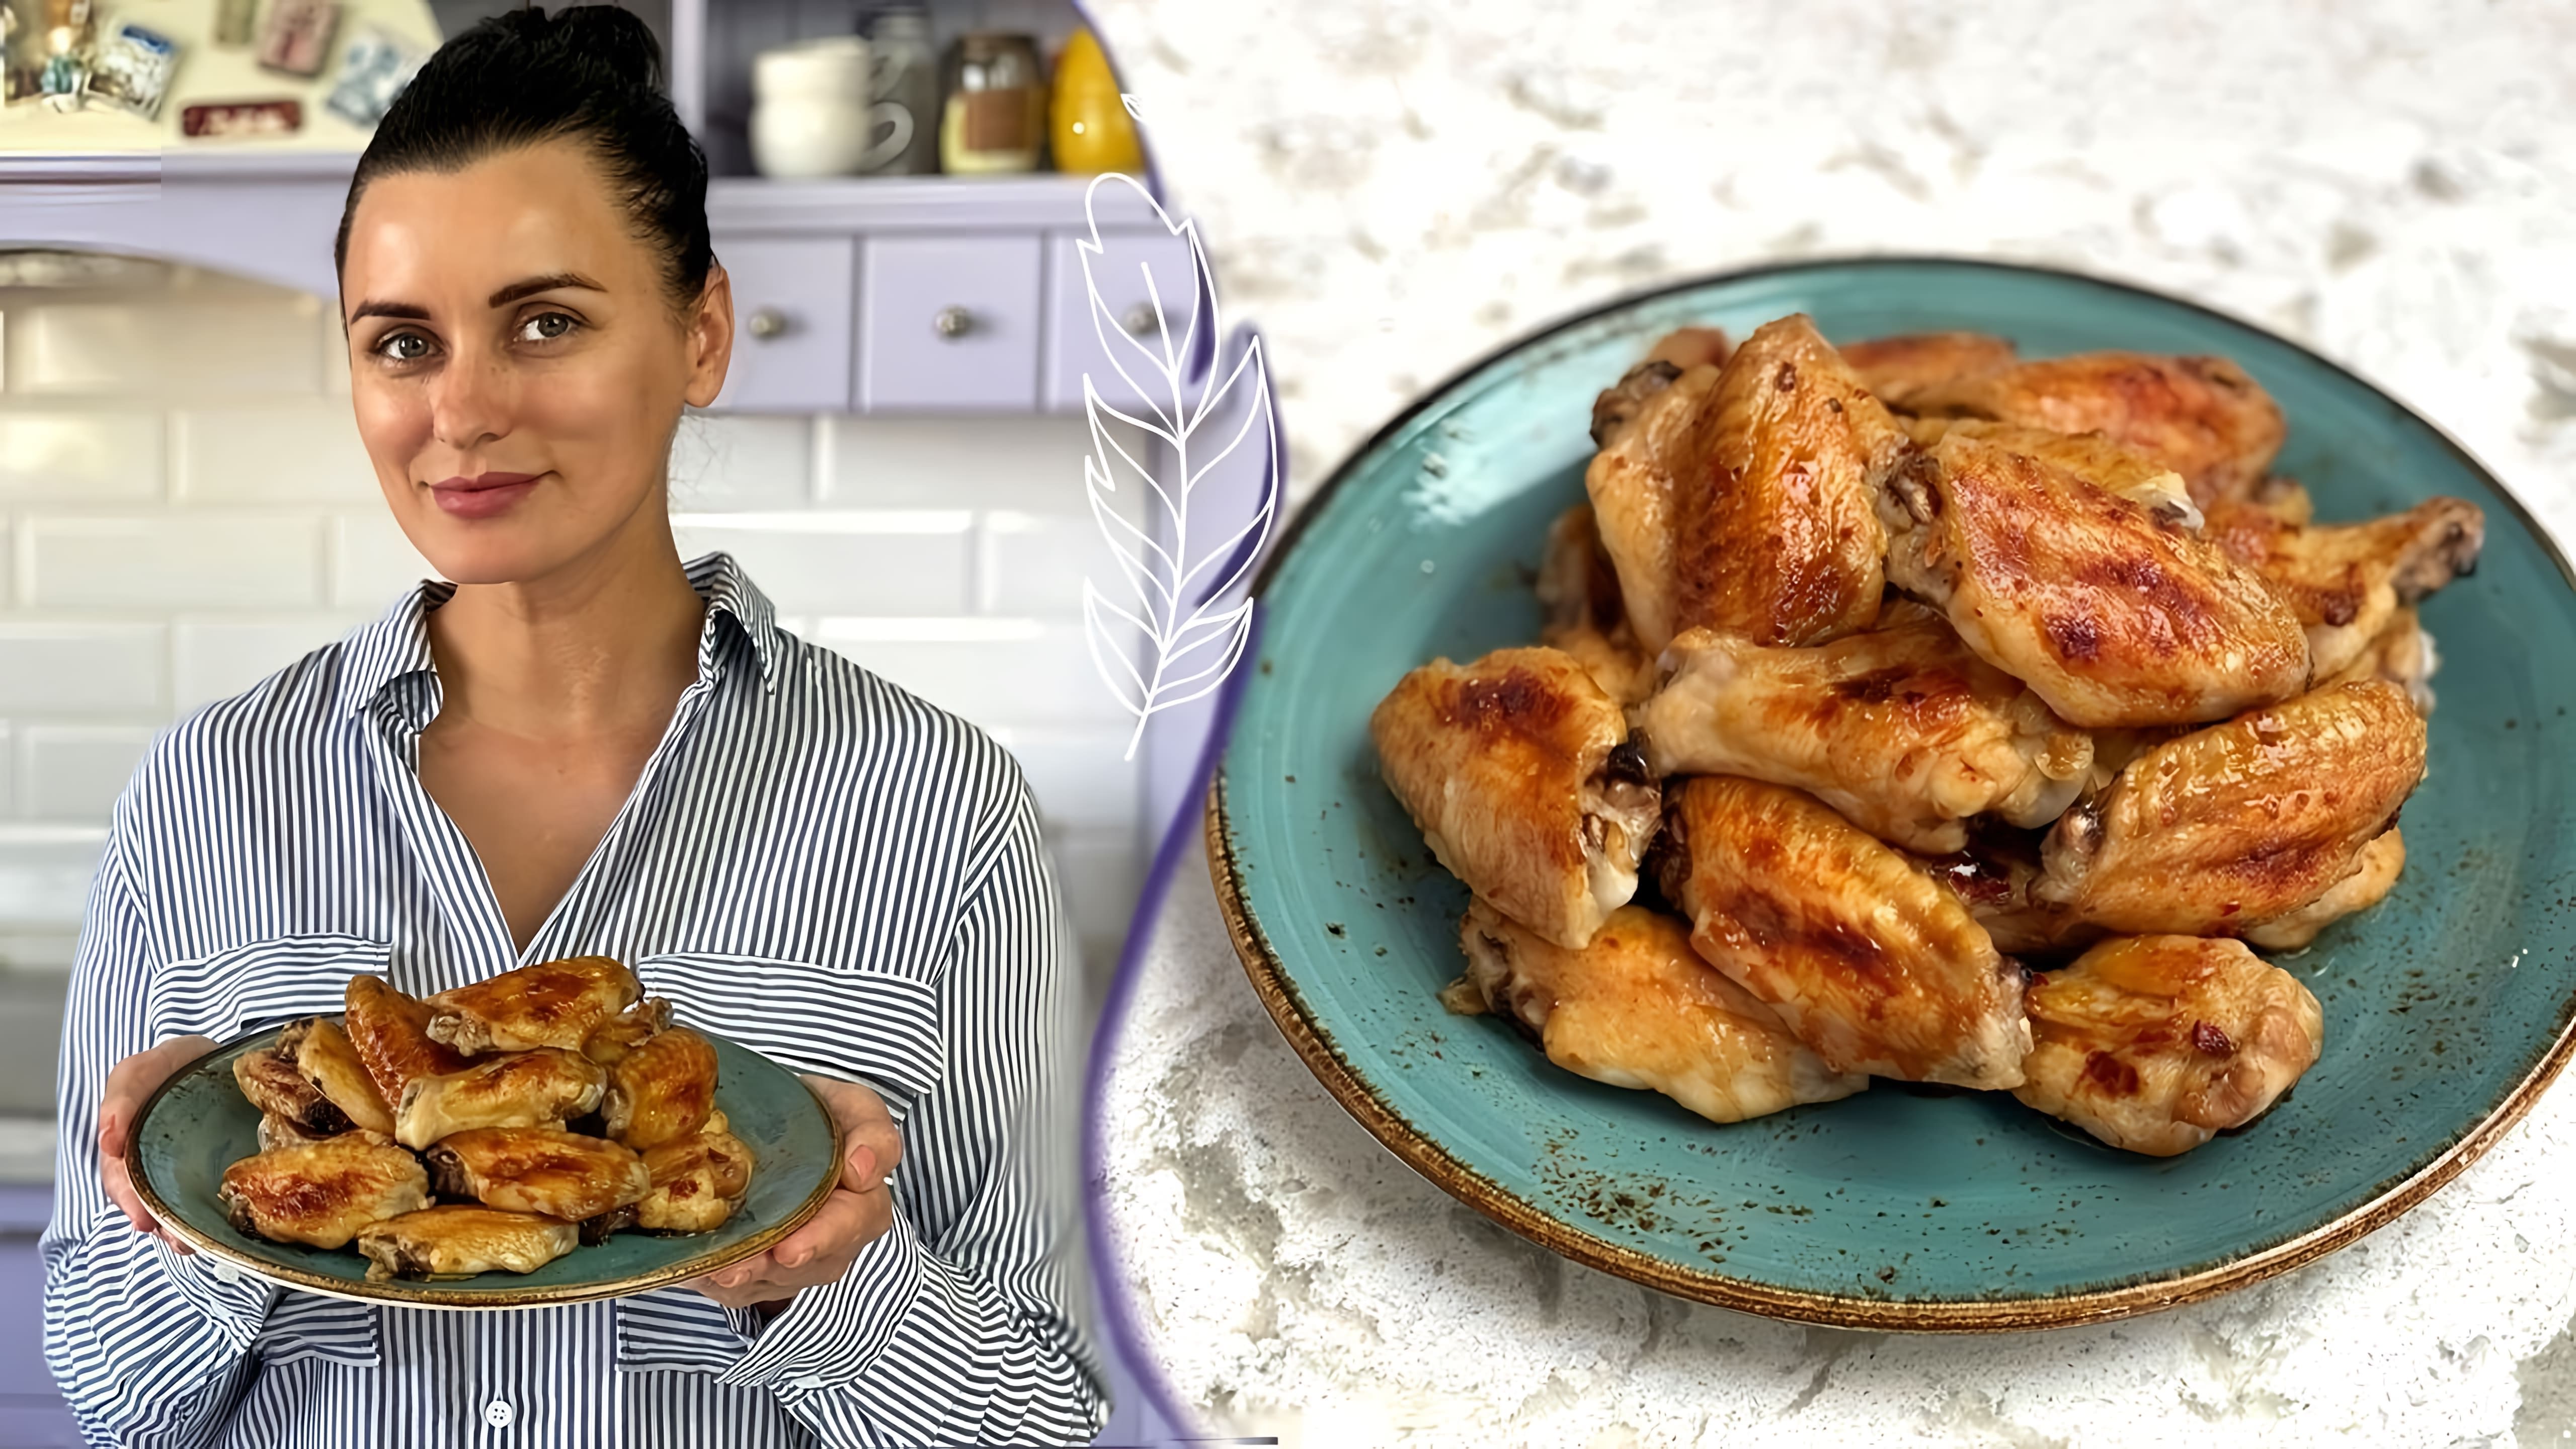 В этом видео демонстрируется простой и быстрый рецепт приготовления сочных куриных крылышек в медово-горчичном соусе с хрустящей корочкой